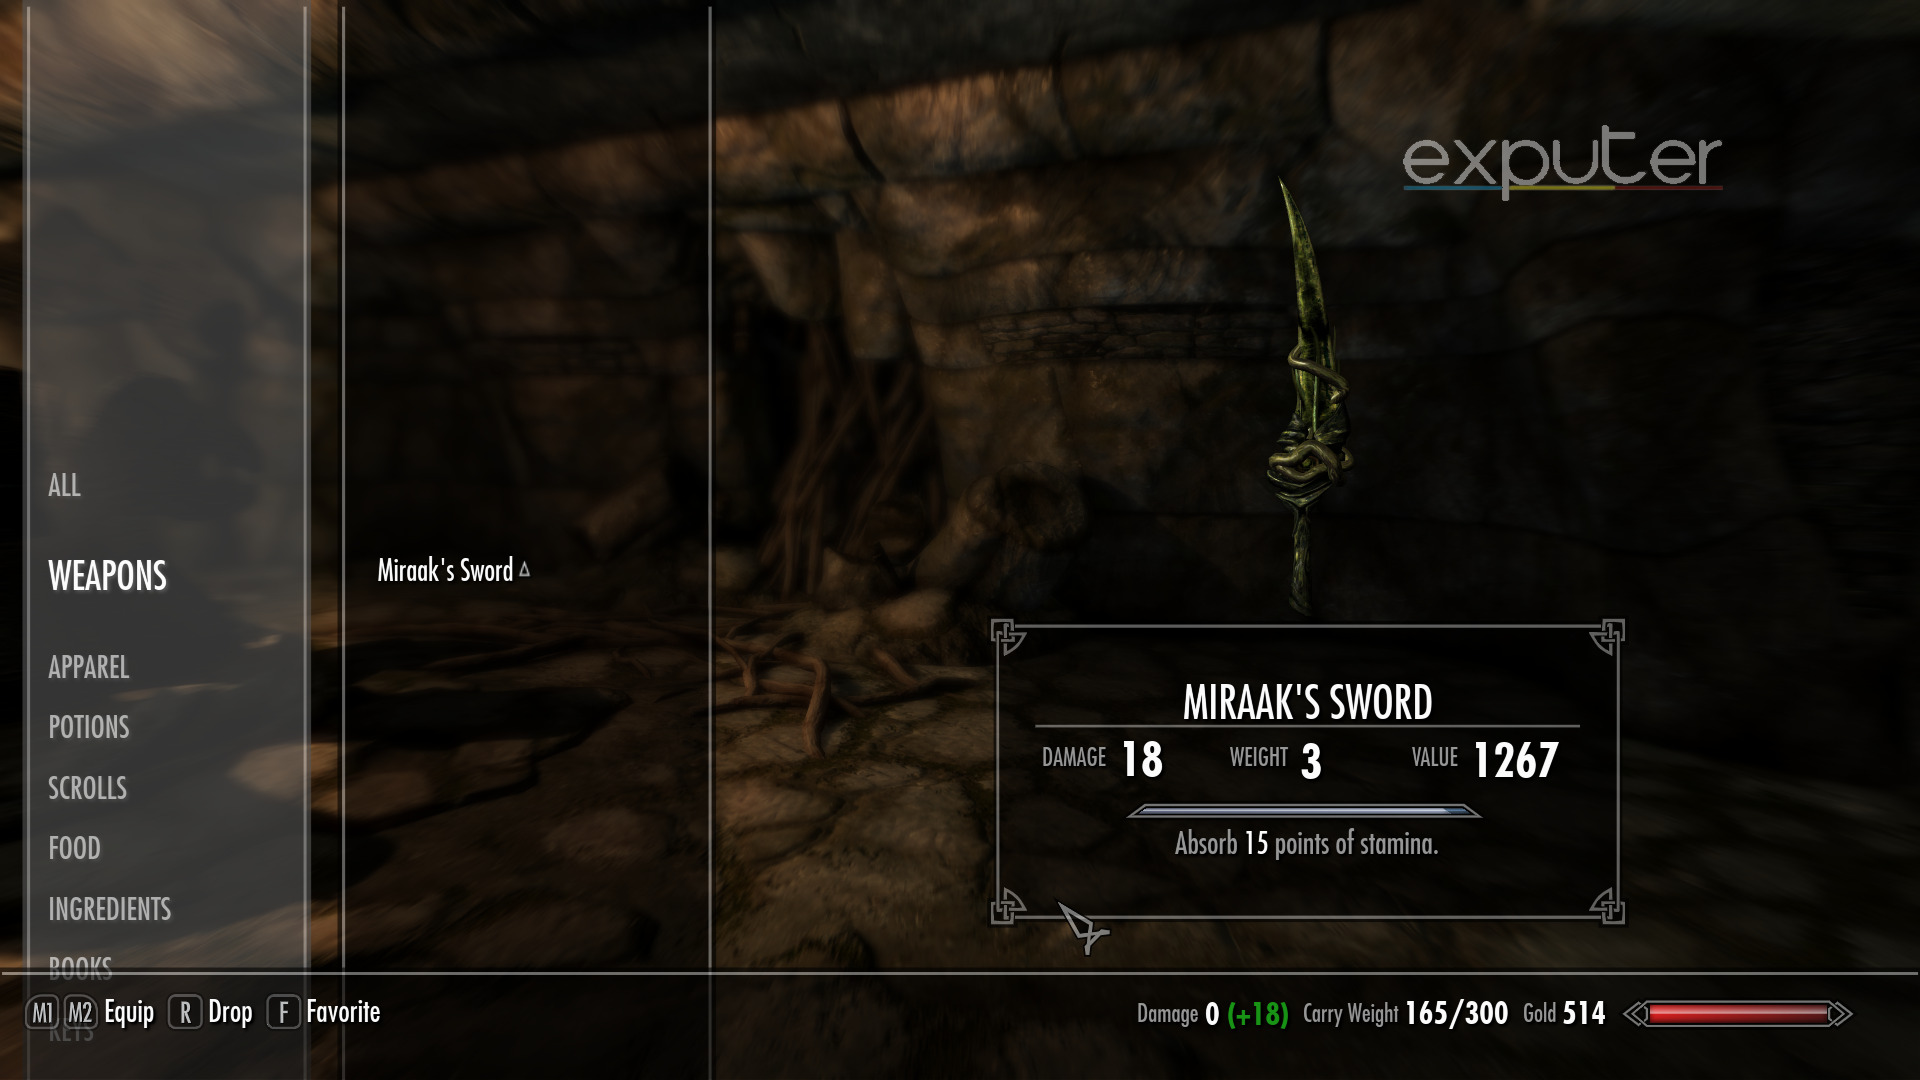 Miraak's Sword in Skyrim.